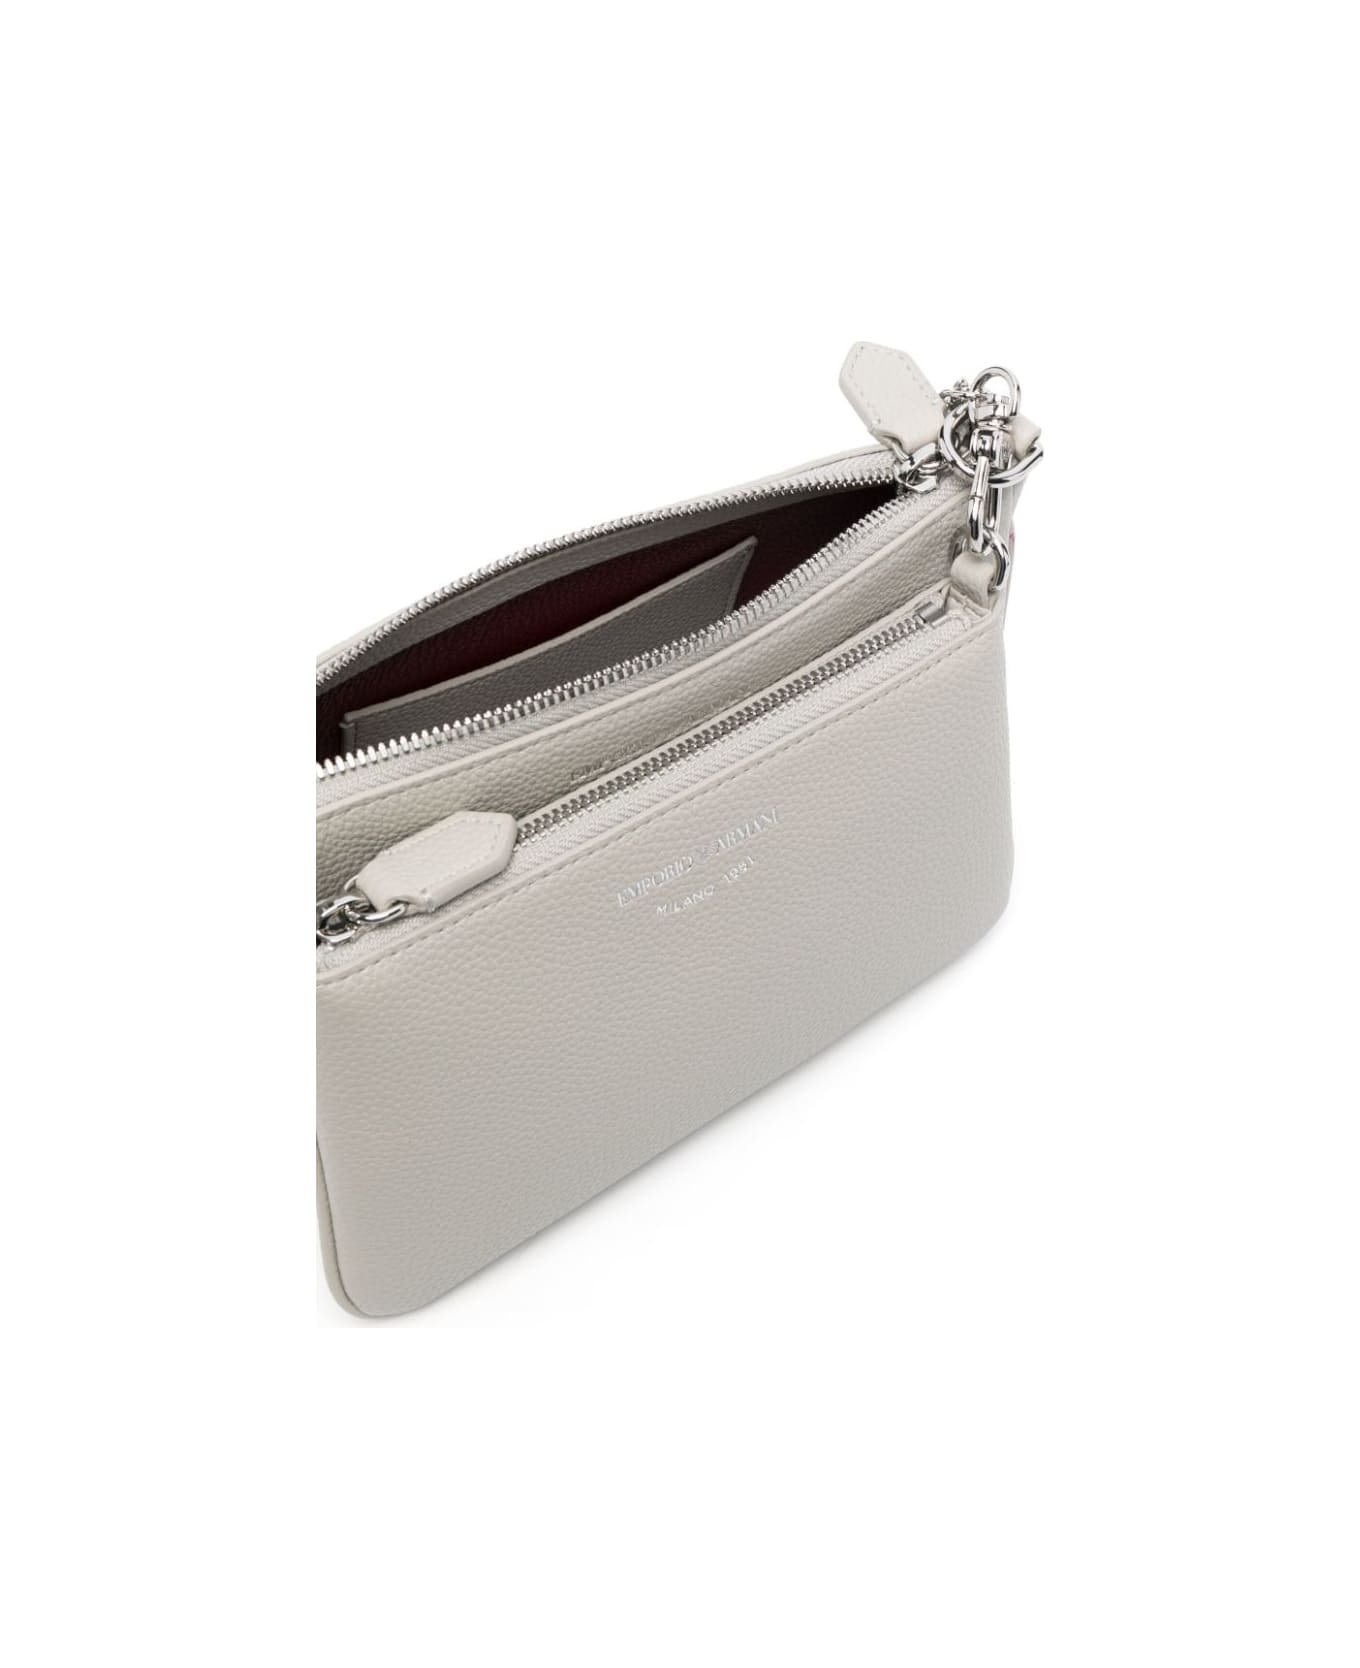 Emporio Armani Mini Shoulder Bag - White